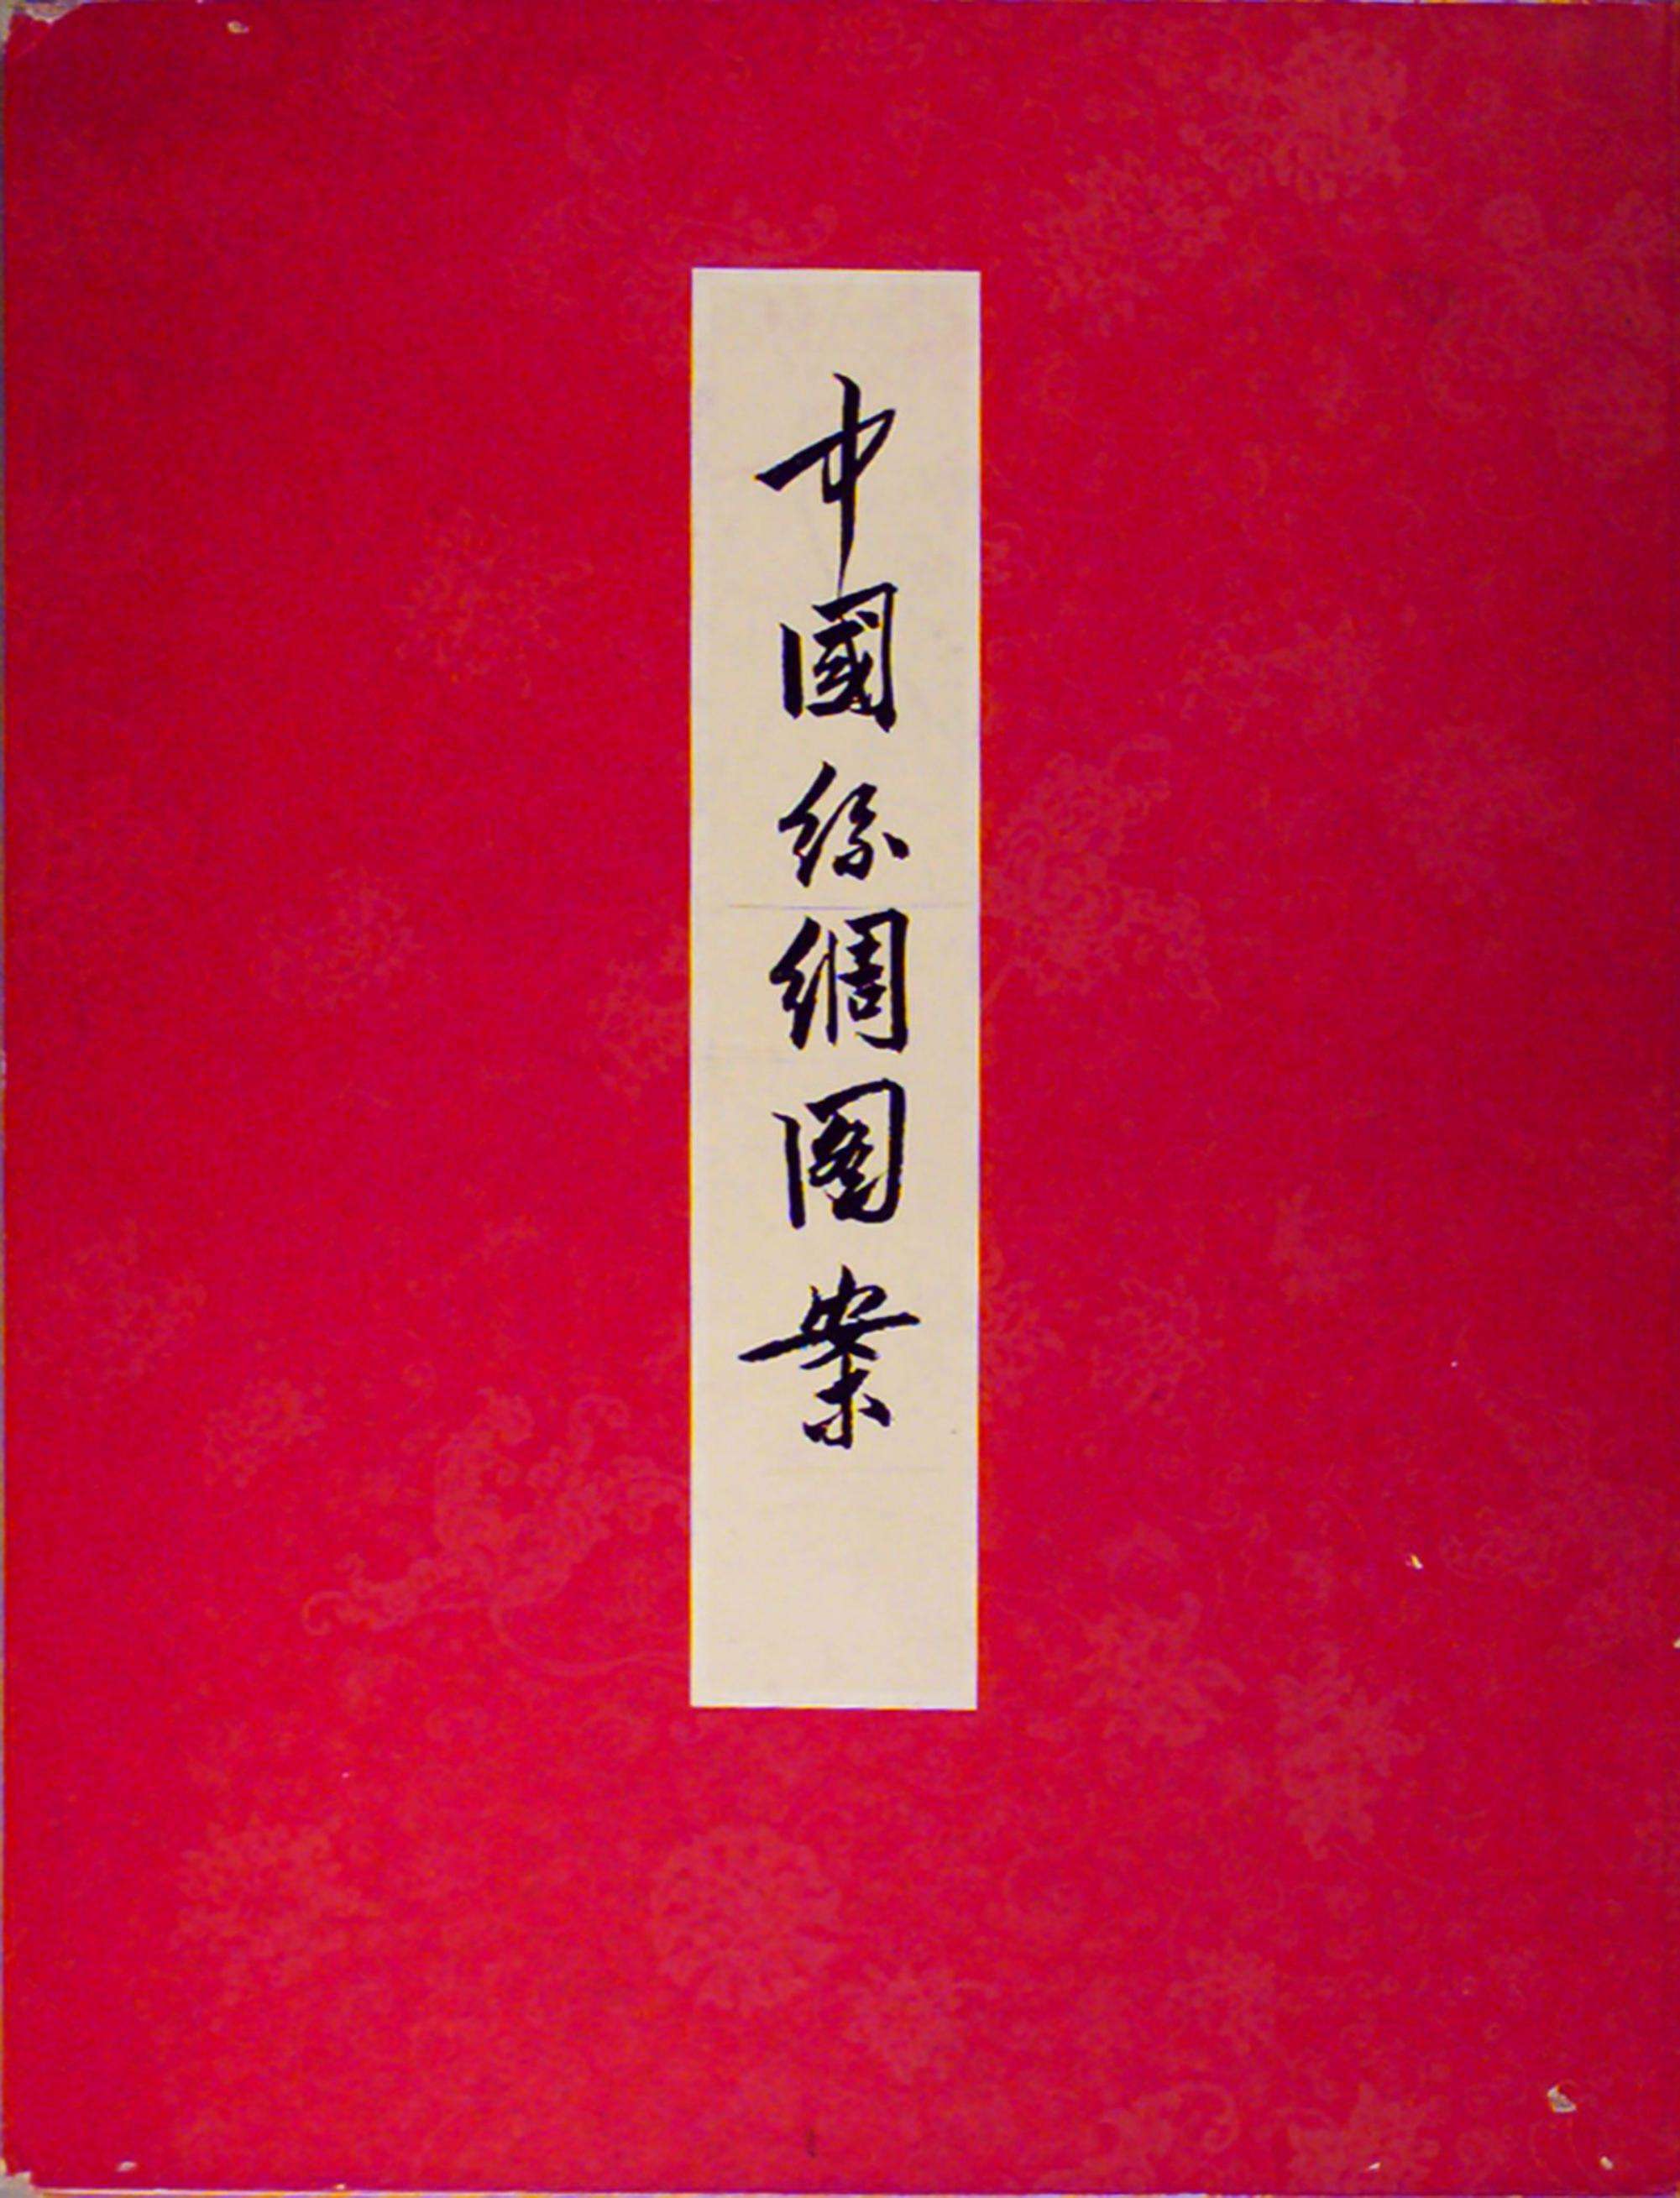 中国丝绸图案.沈从文.王家树编.中国古典艺术出版社.1957年出版PDF电子